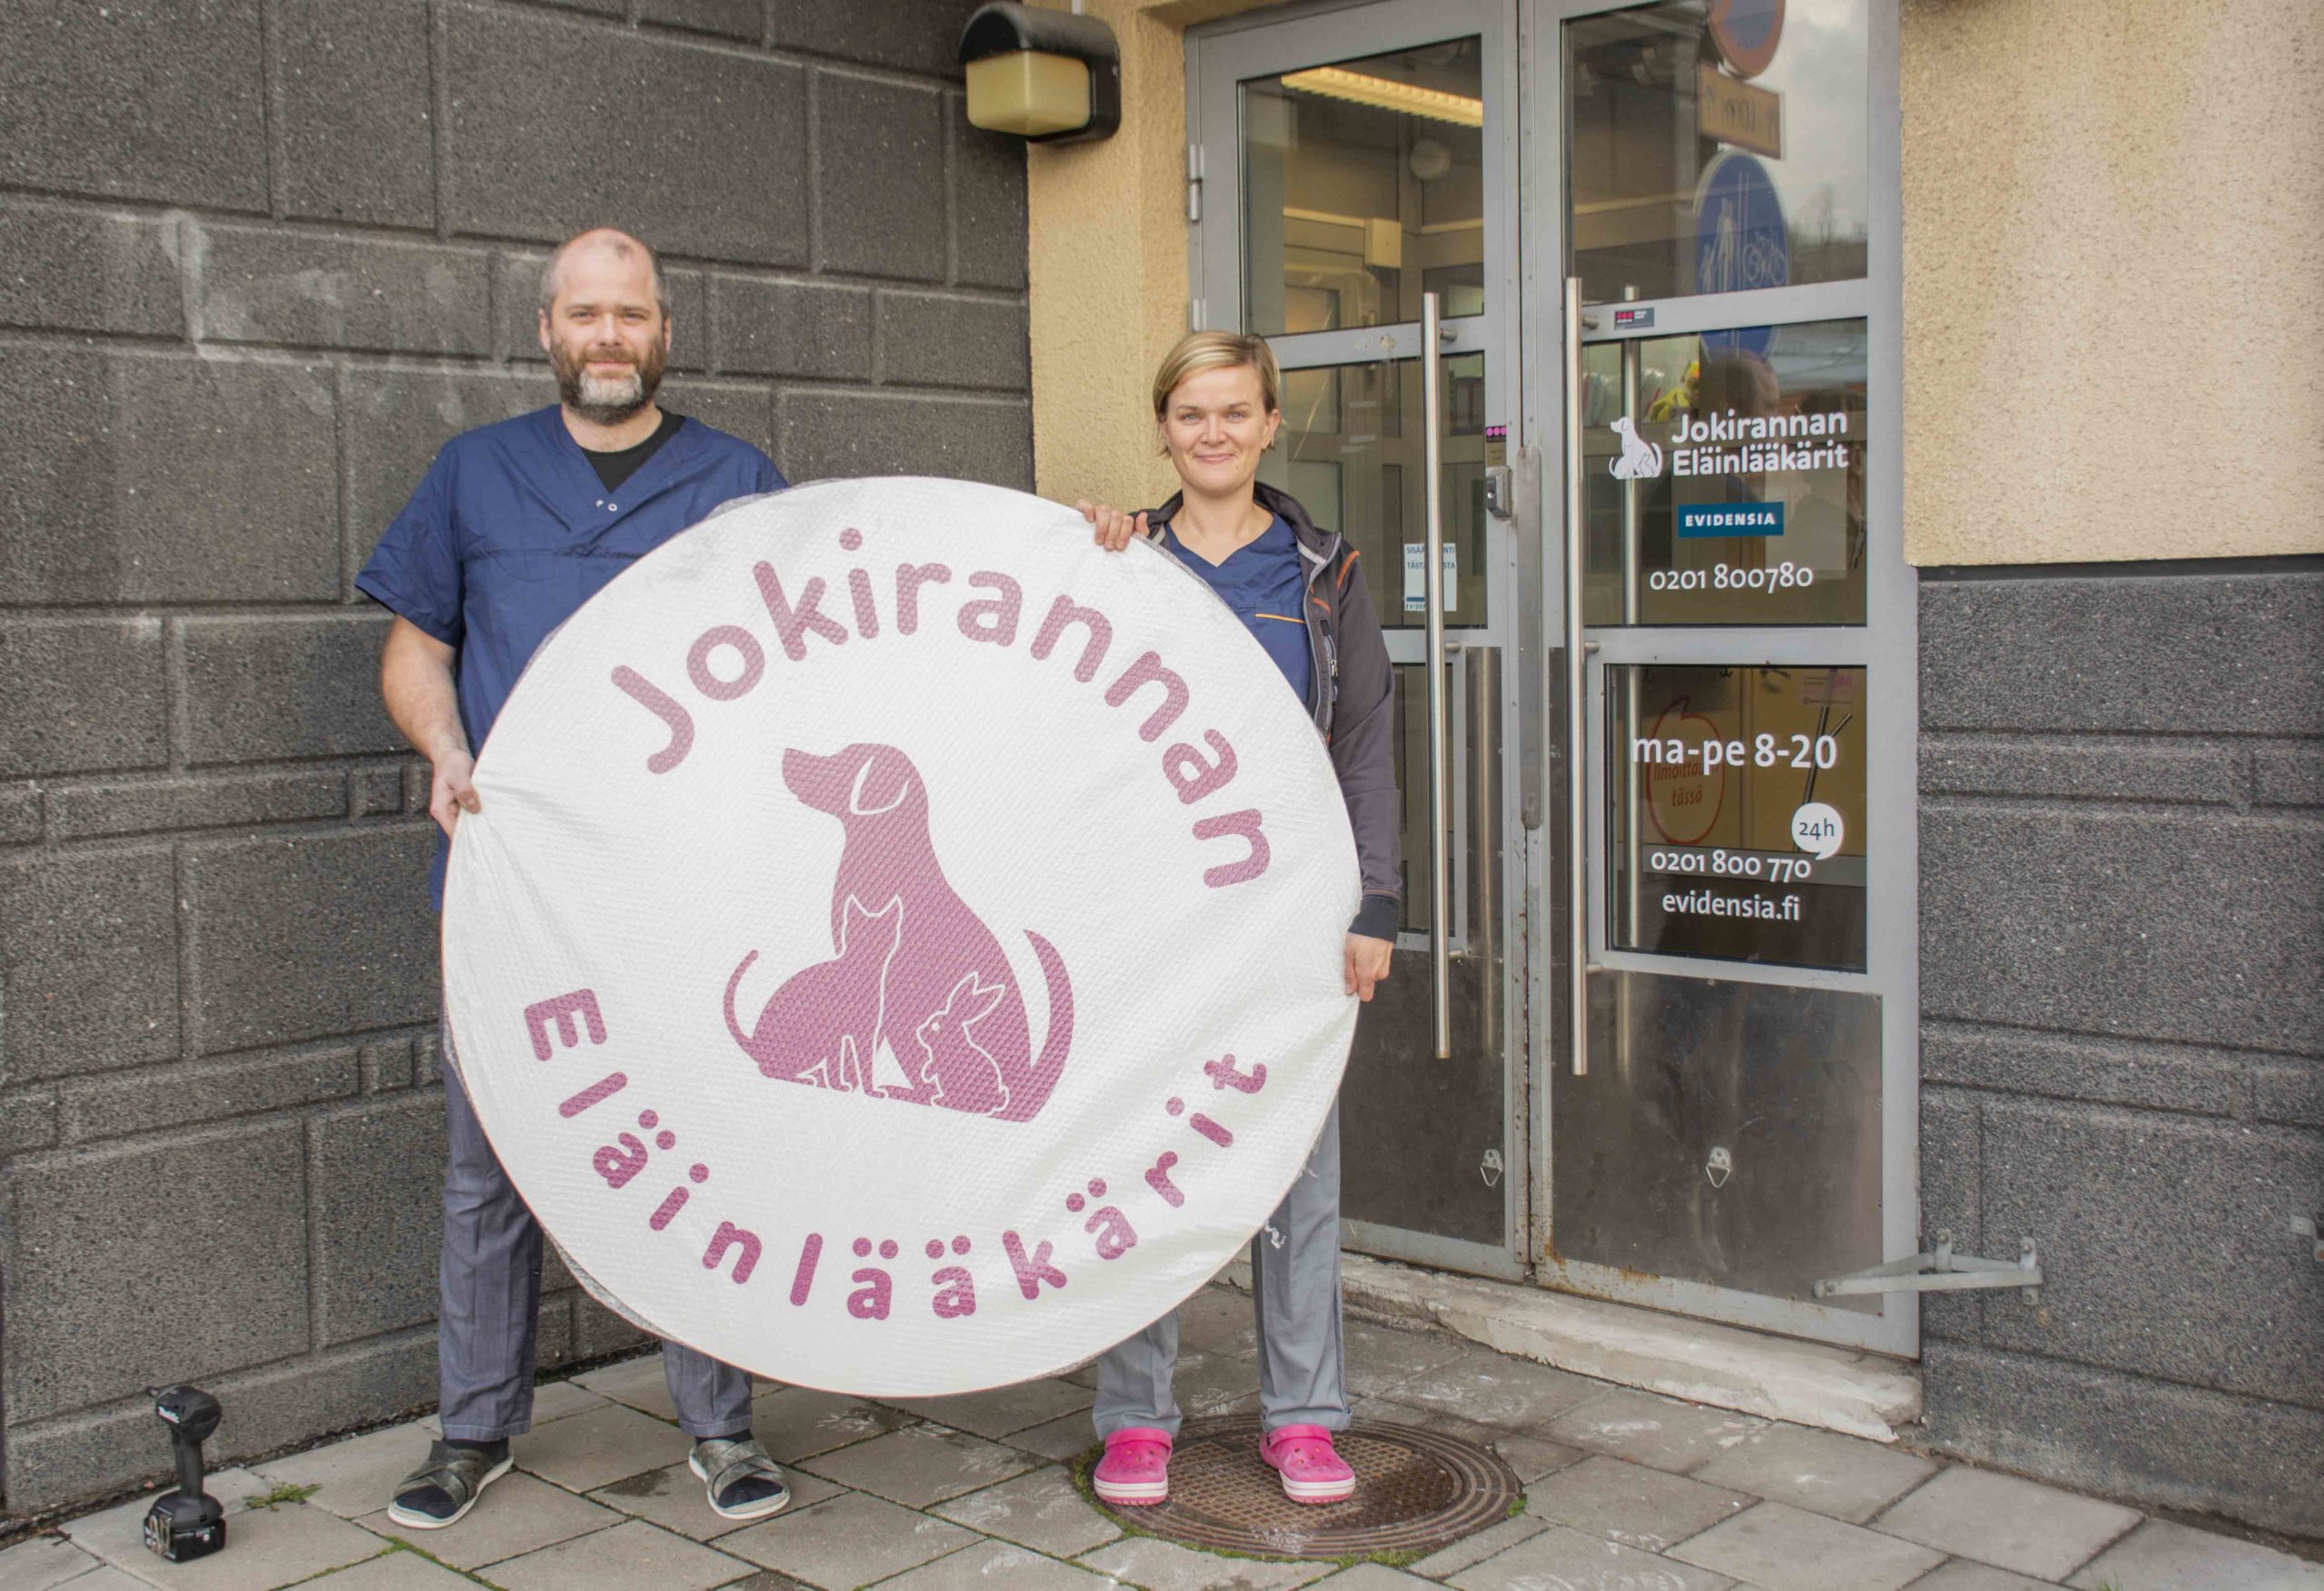 Evidensia Turku Jokirannan Eläinlääkärit web